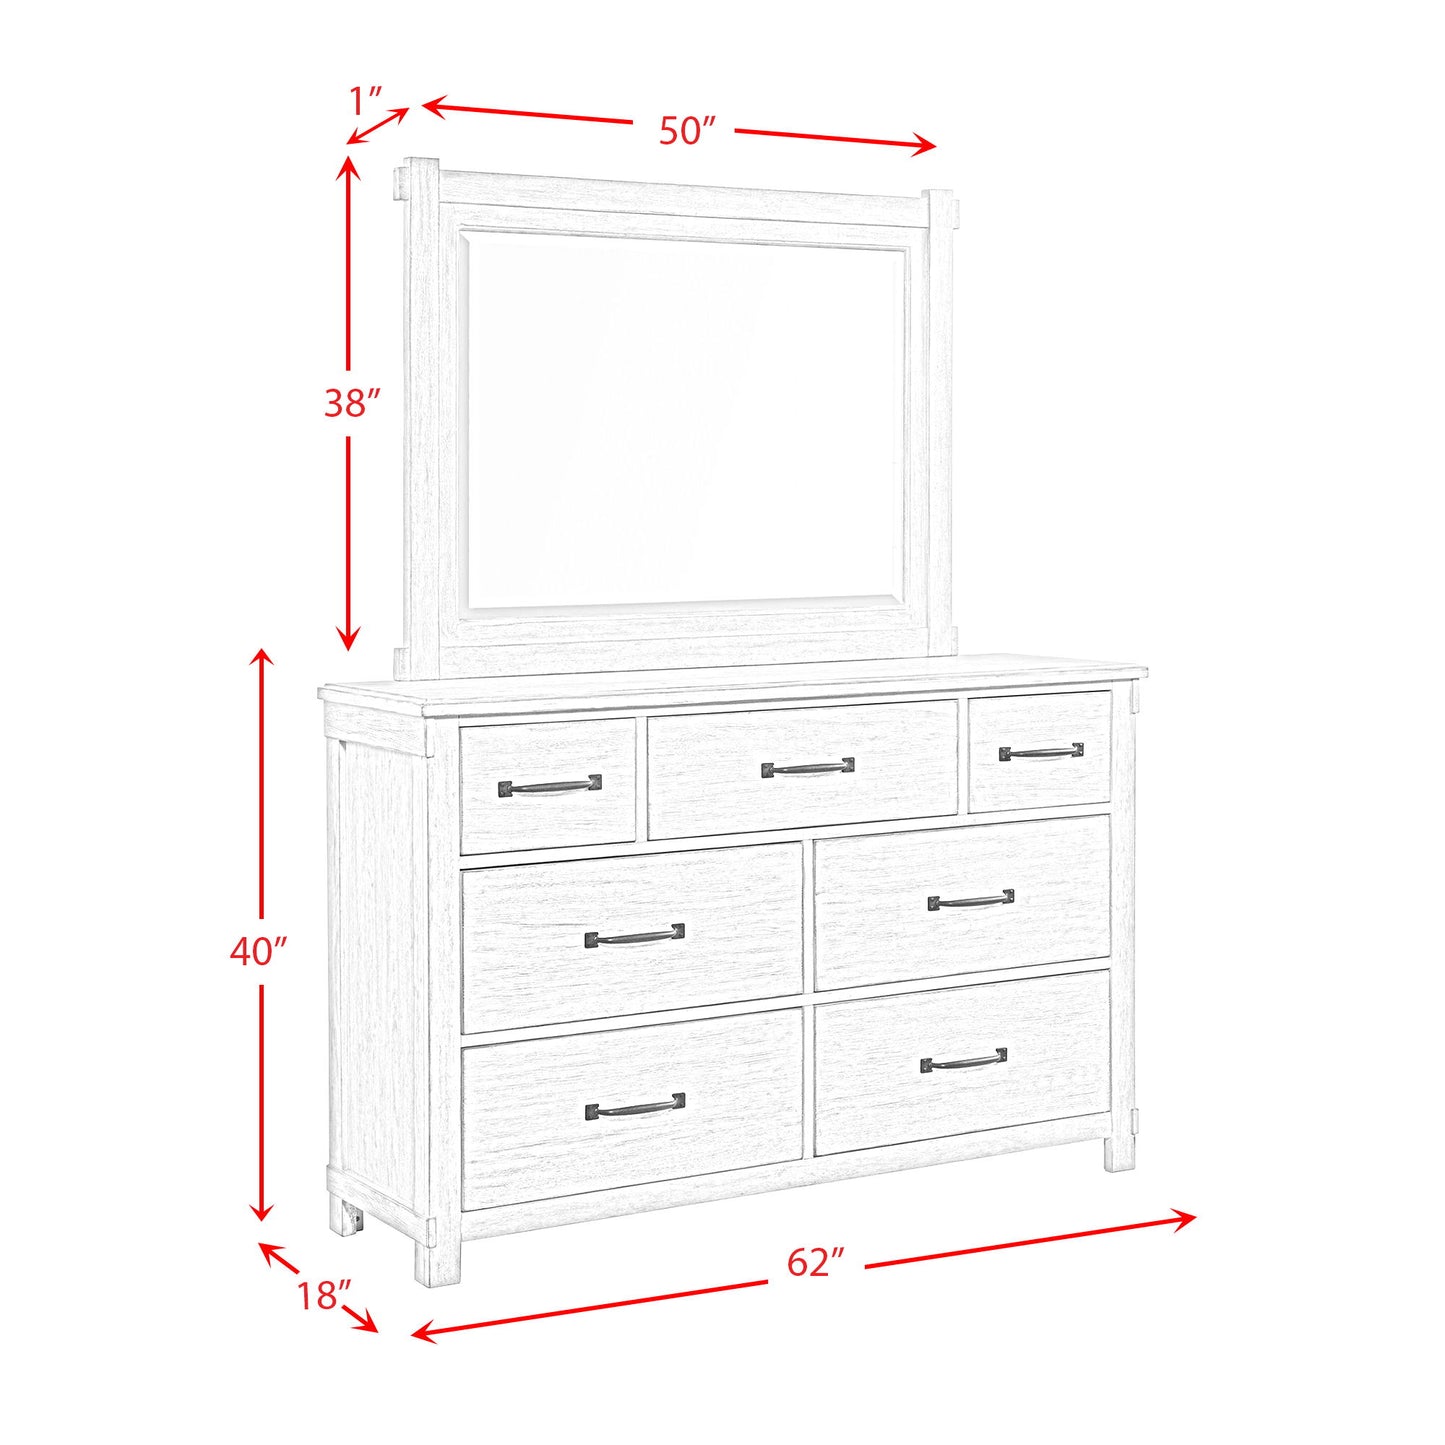 Scott - 7-Drawer Dresser With Mirror Set